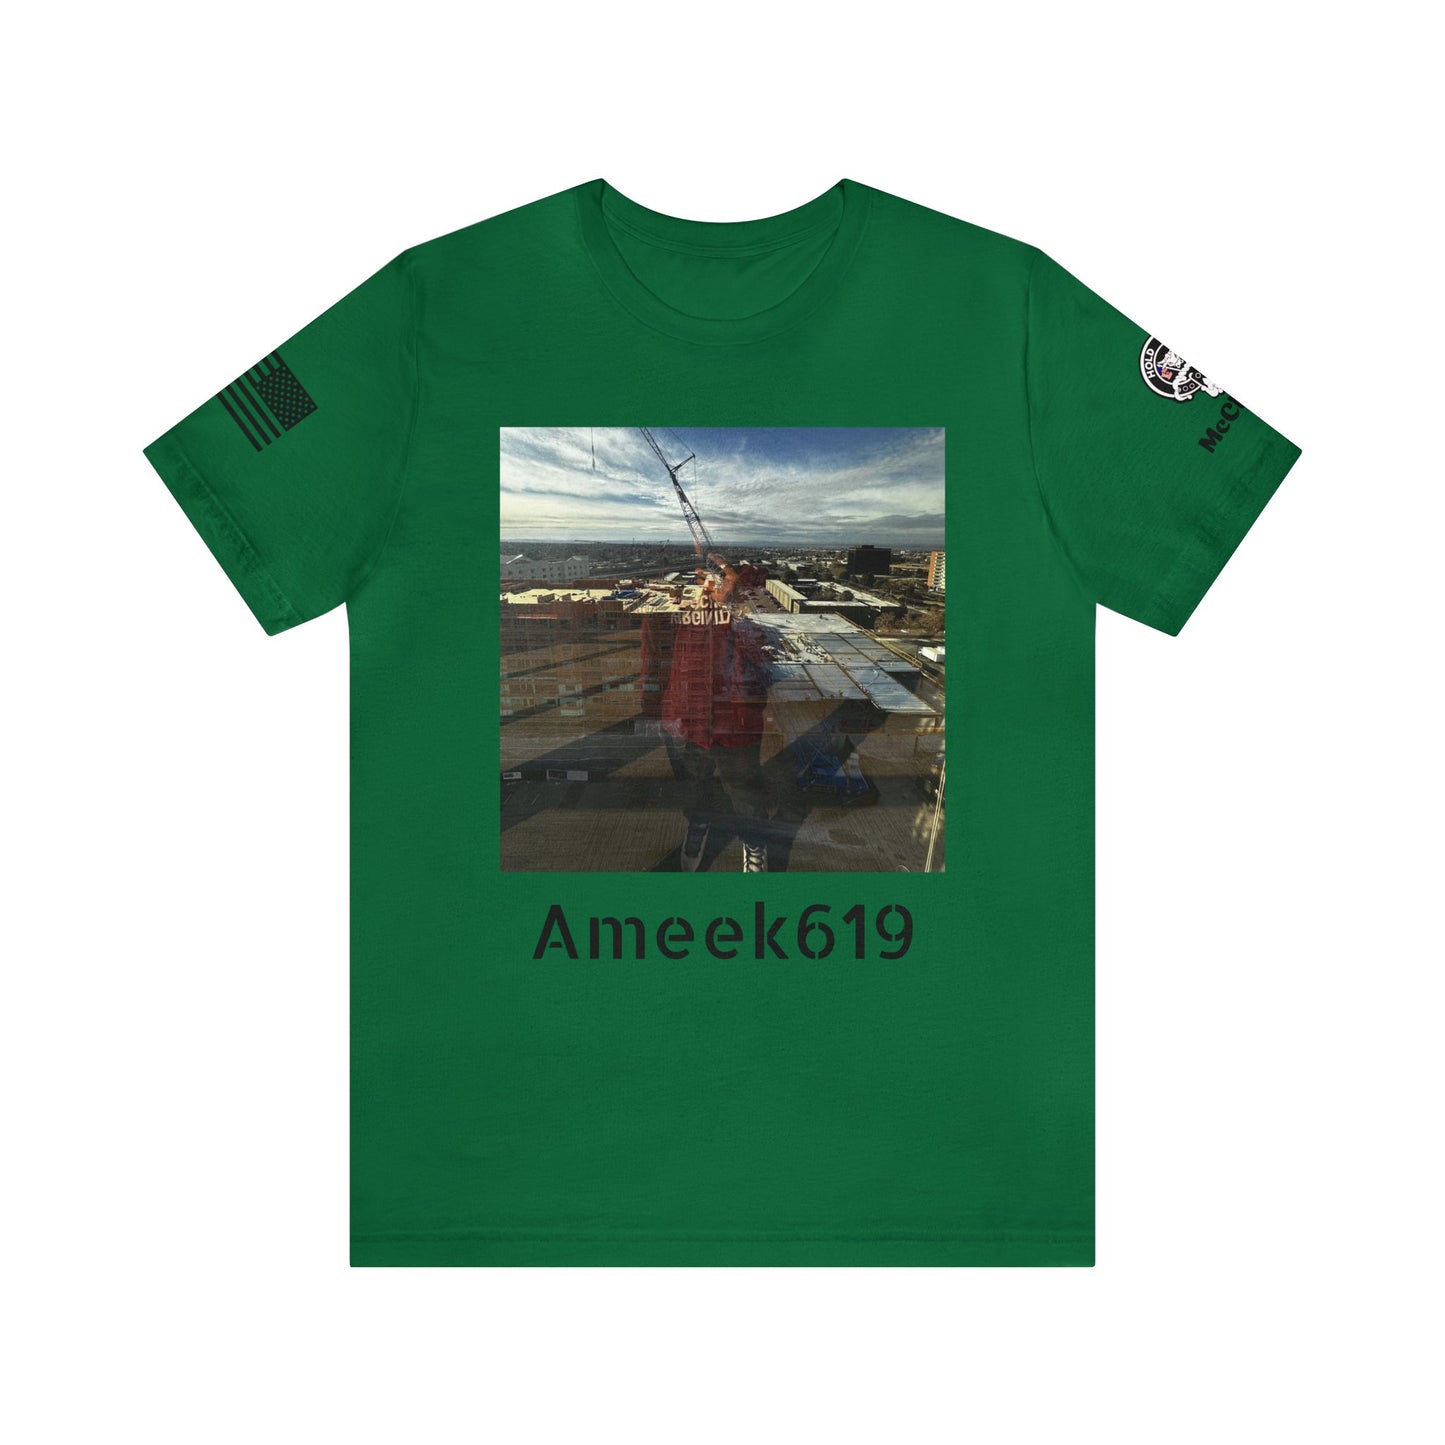 Ameek619